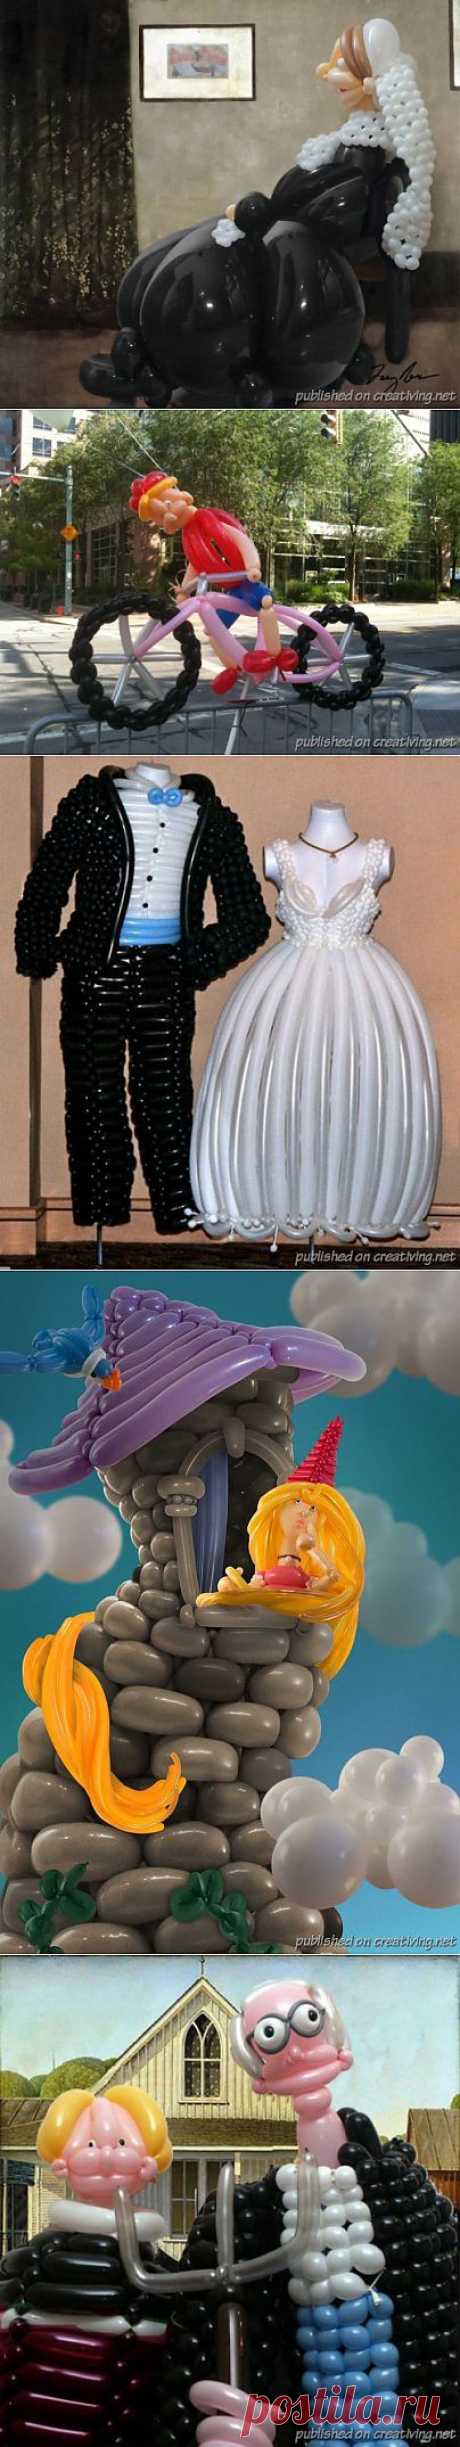 Потрясающее моделирование из воздушных шаров. Художники Ларри Мосс и Келли Читл. | Наслаждение творчеством